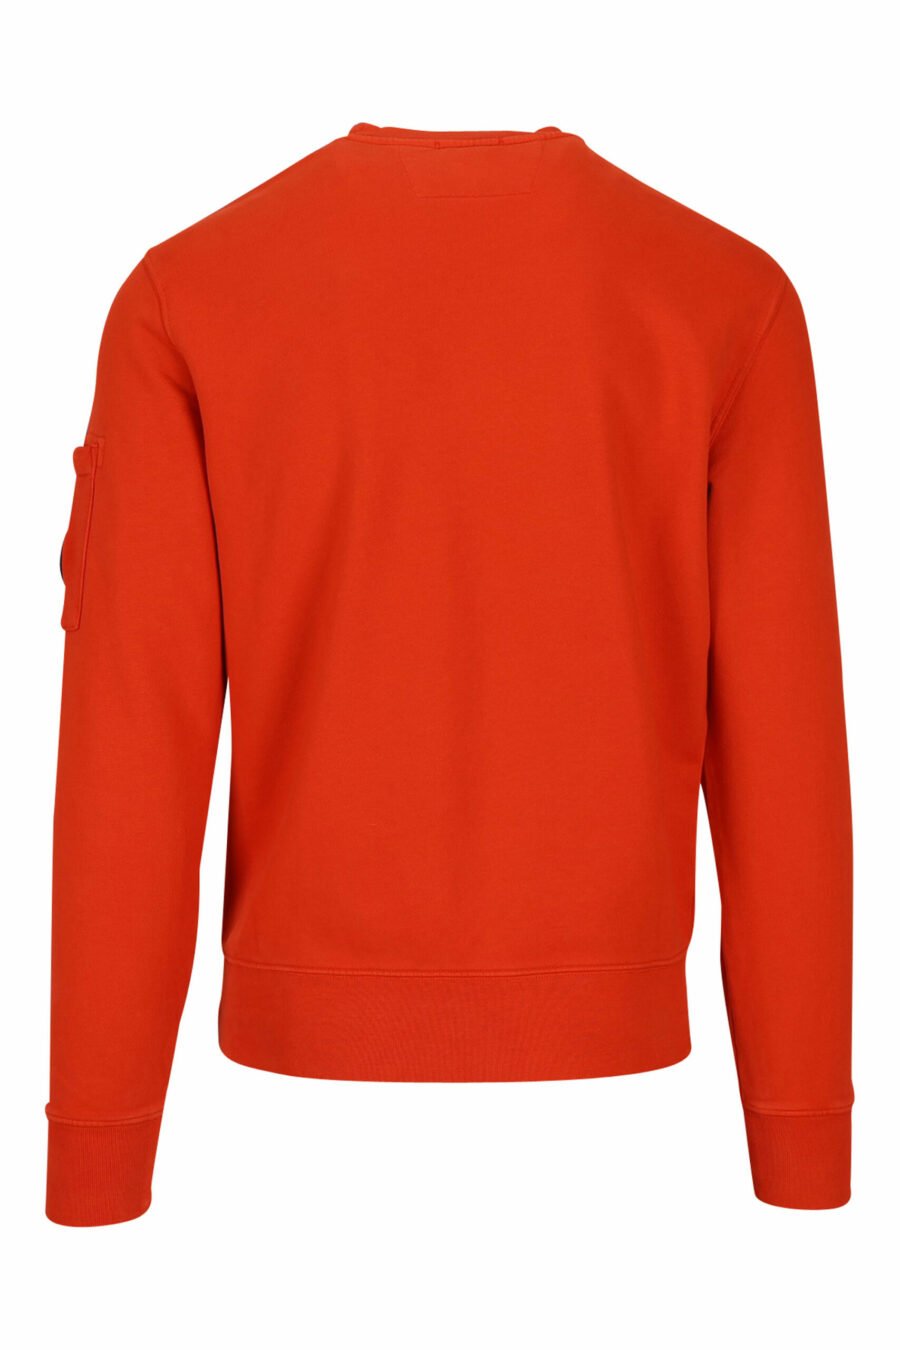 Sweatshirt orange avec logo de la lentille latérale - 7620943598254 2 scaled